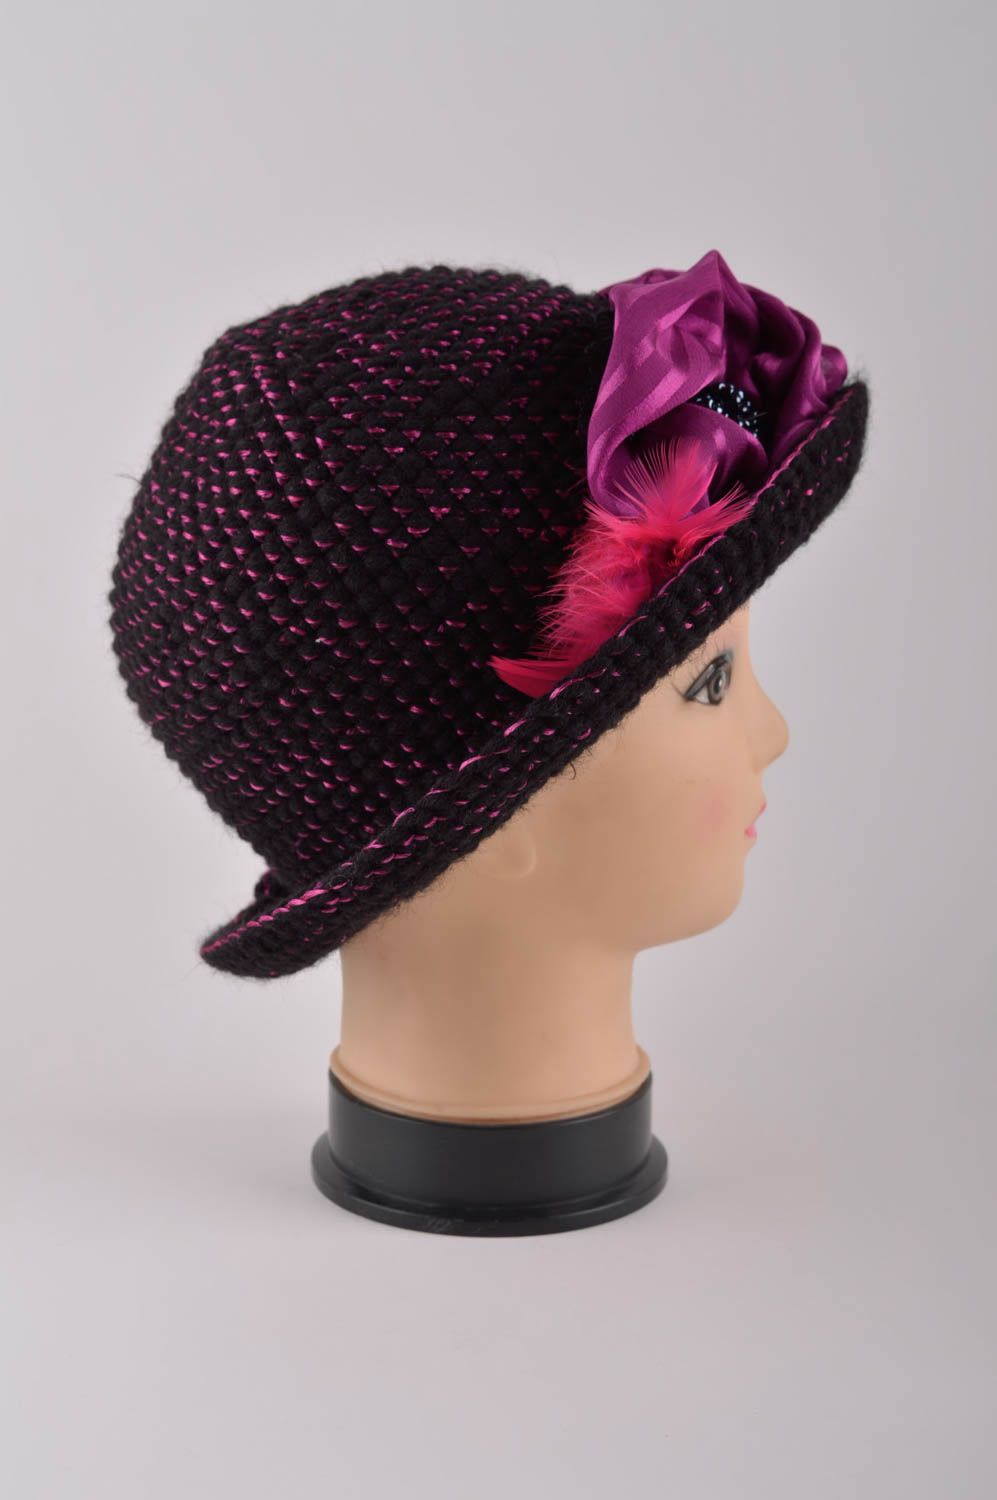 Женская шапка ручной работы головной убор зимняя шапка цвета фуксии с шелком фото 4